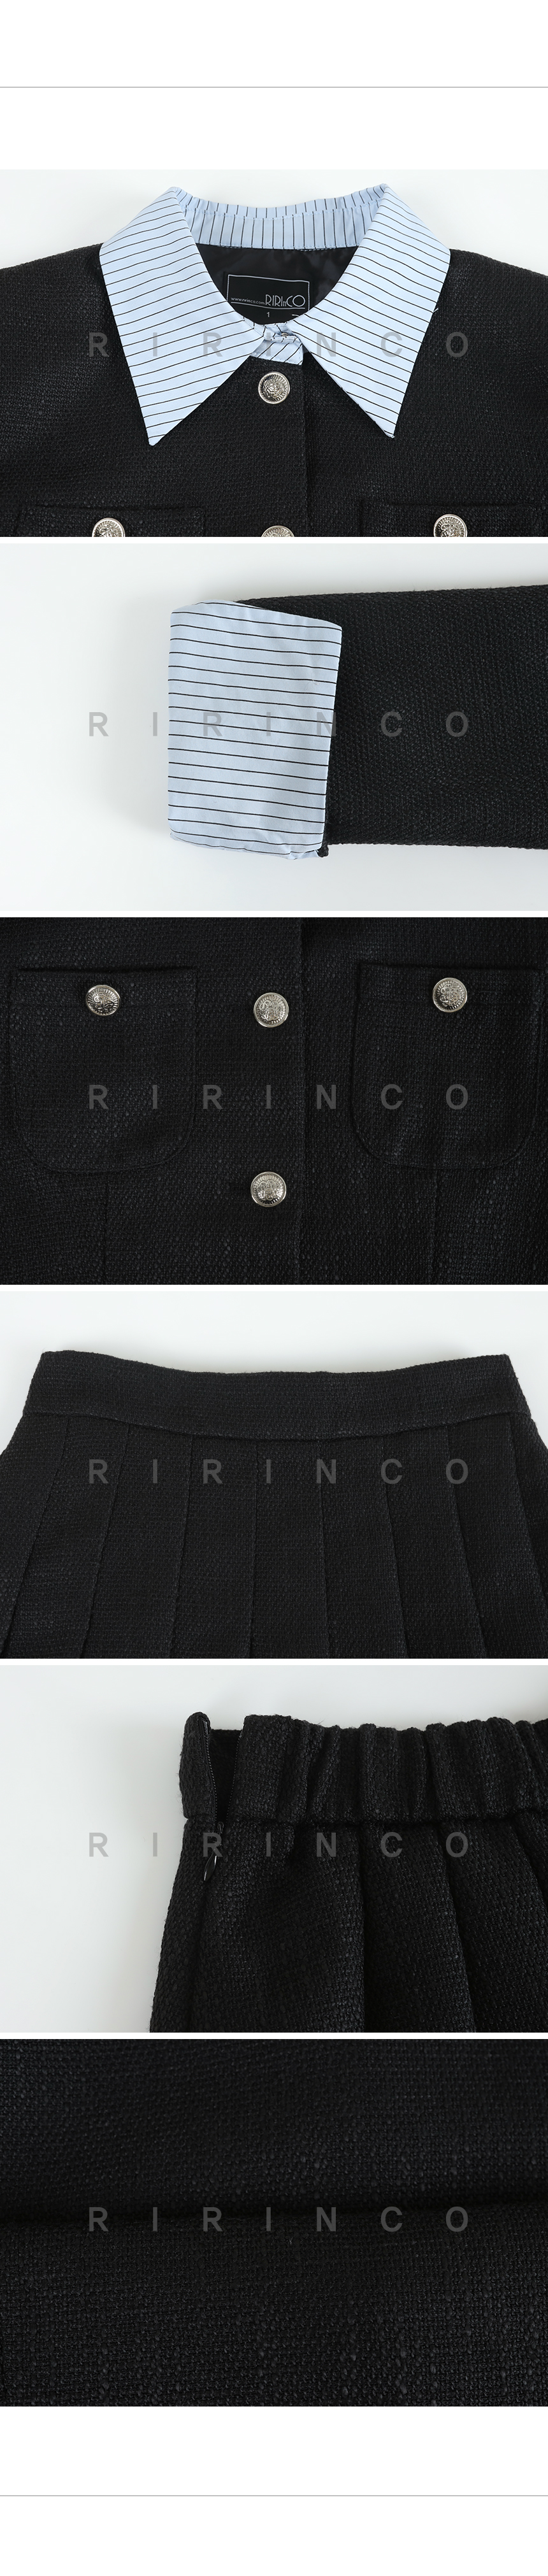 RIRINCO ツイード配色ジャケット&後ろゴムプリーツスカート上下セット